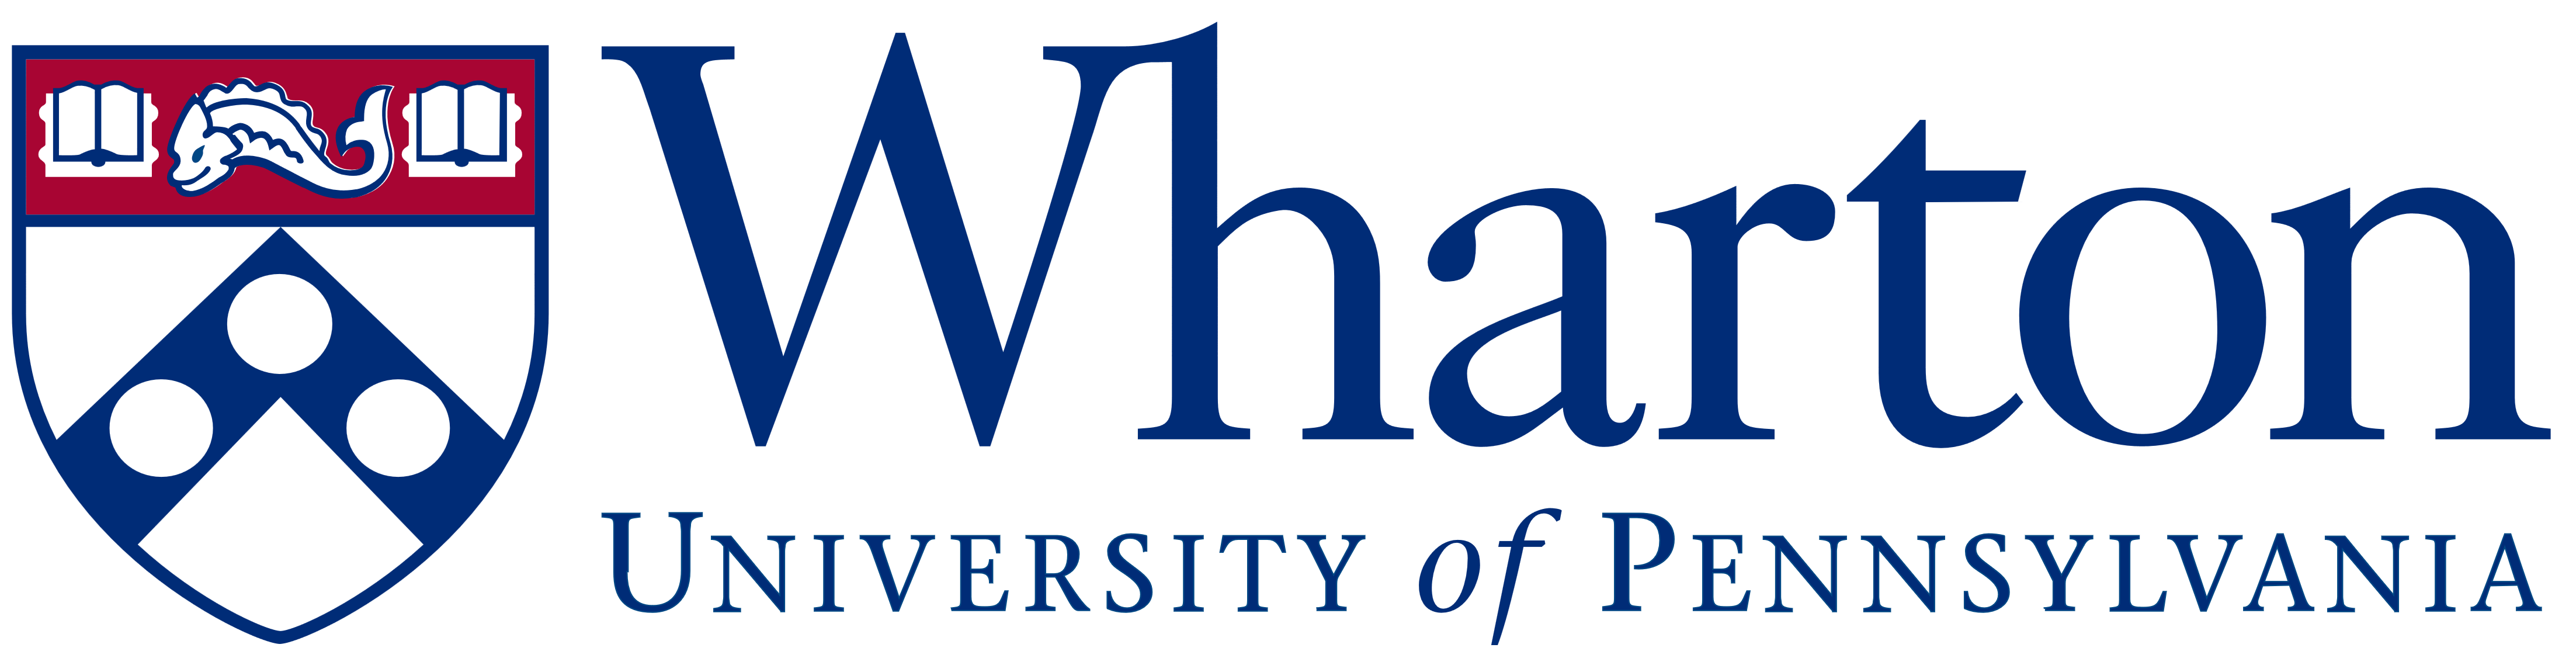 Wharton logo, logotype